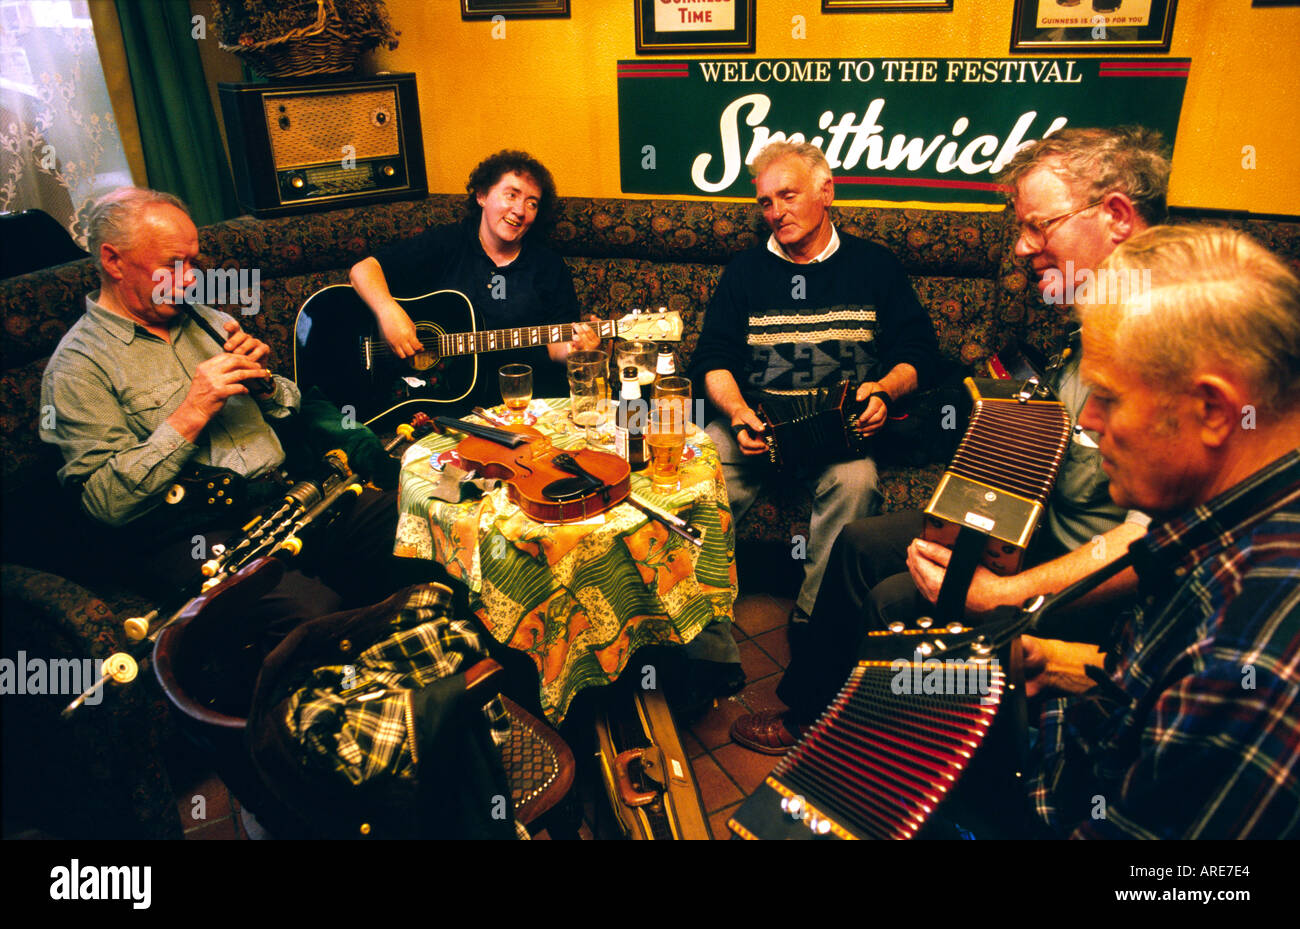 Le pub irlandais traditionnel de musiciens jouant de la musique dans le bar de l'île de la ville de Kilrush, comté de Clare, Irlande de l'ouest. Banque D'Images